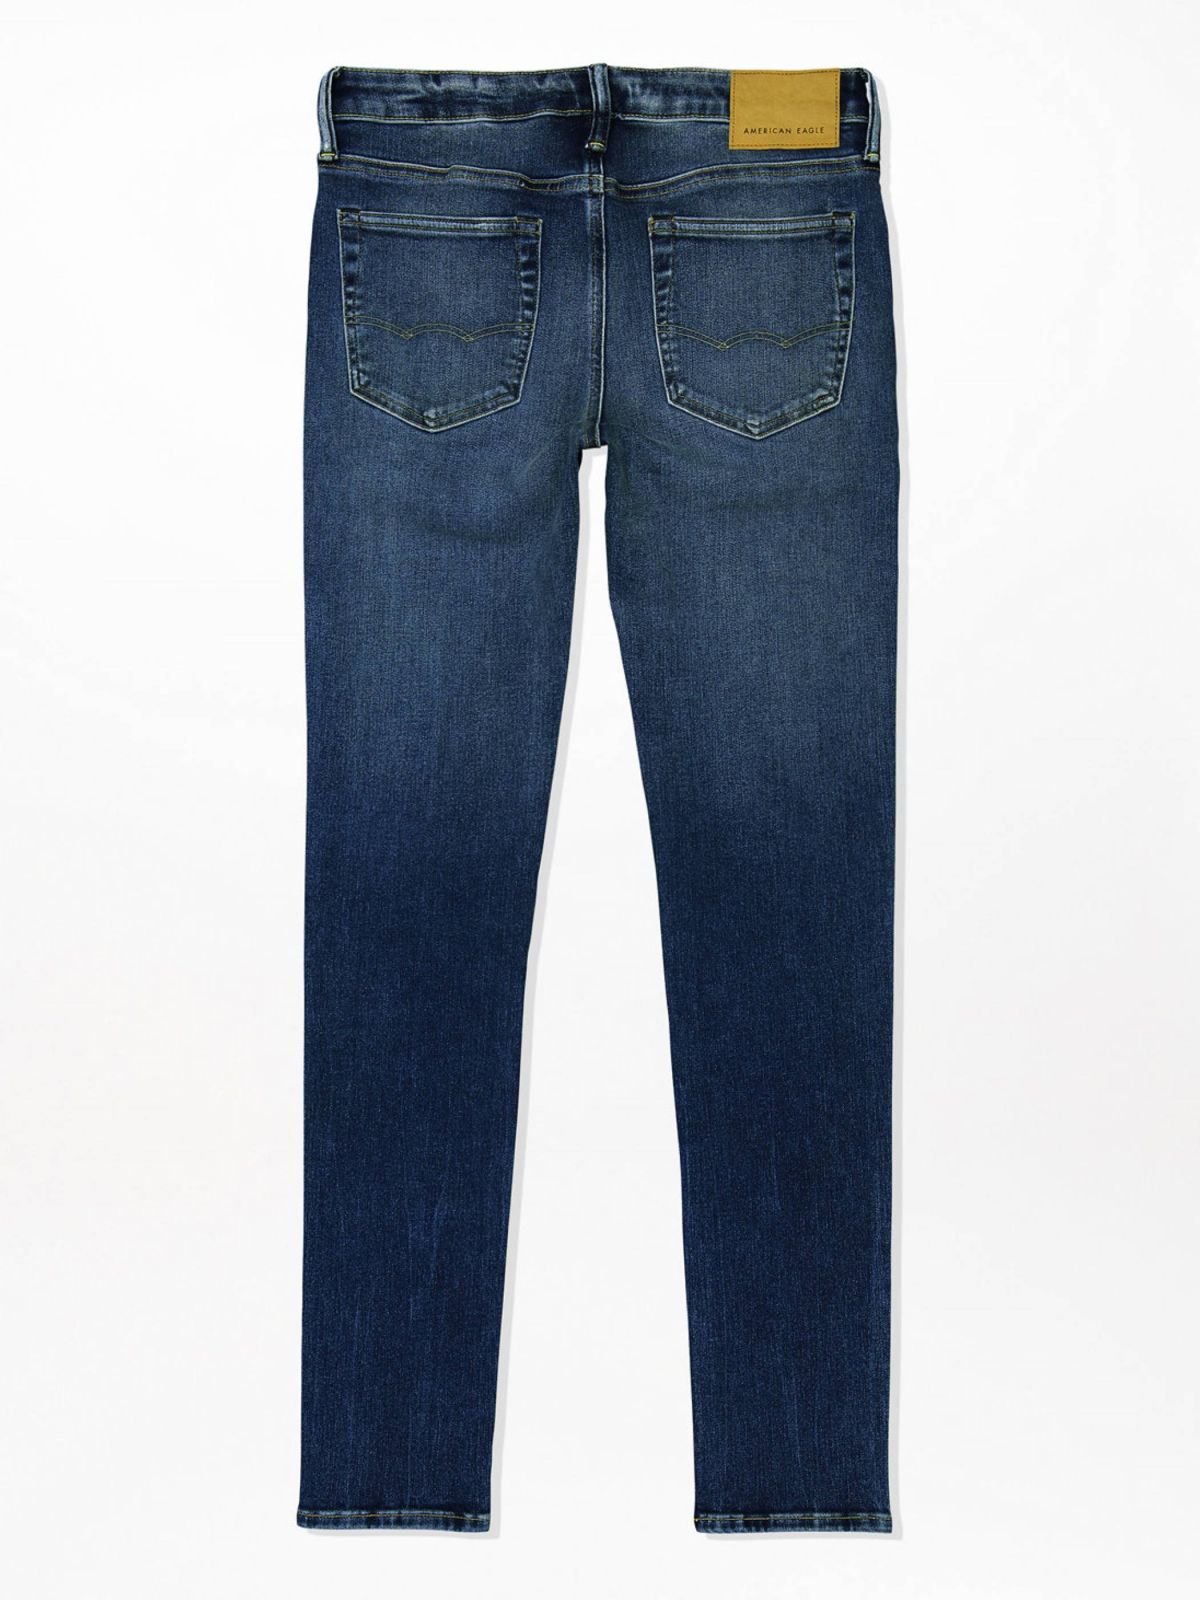  ג'ינס ארוך ווש בגזרת SKINNY של AMERICAN EAGLE